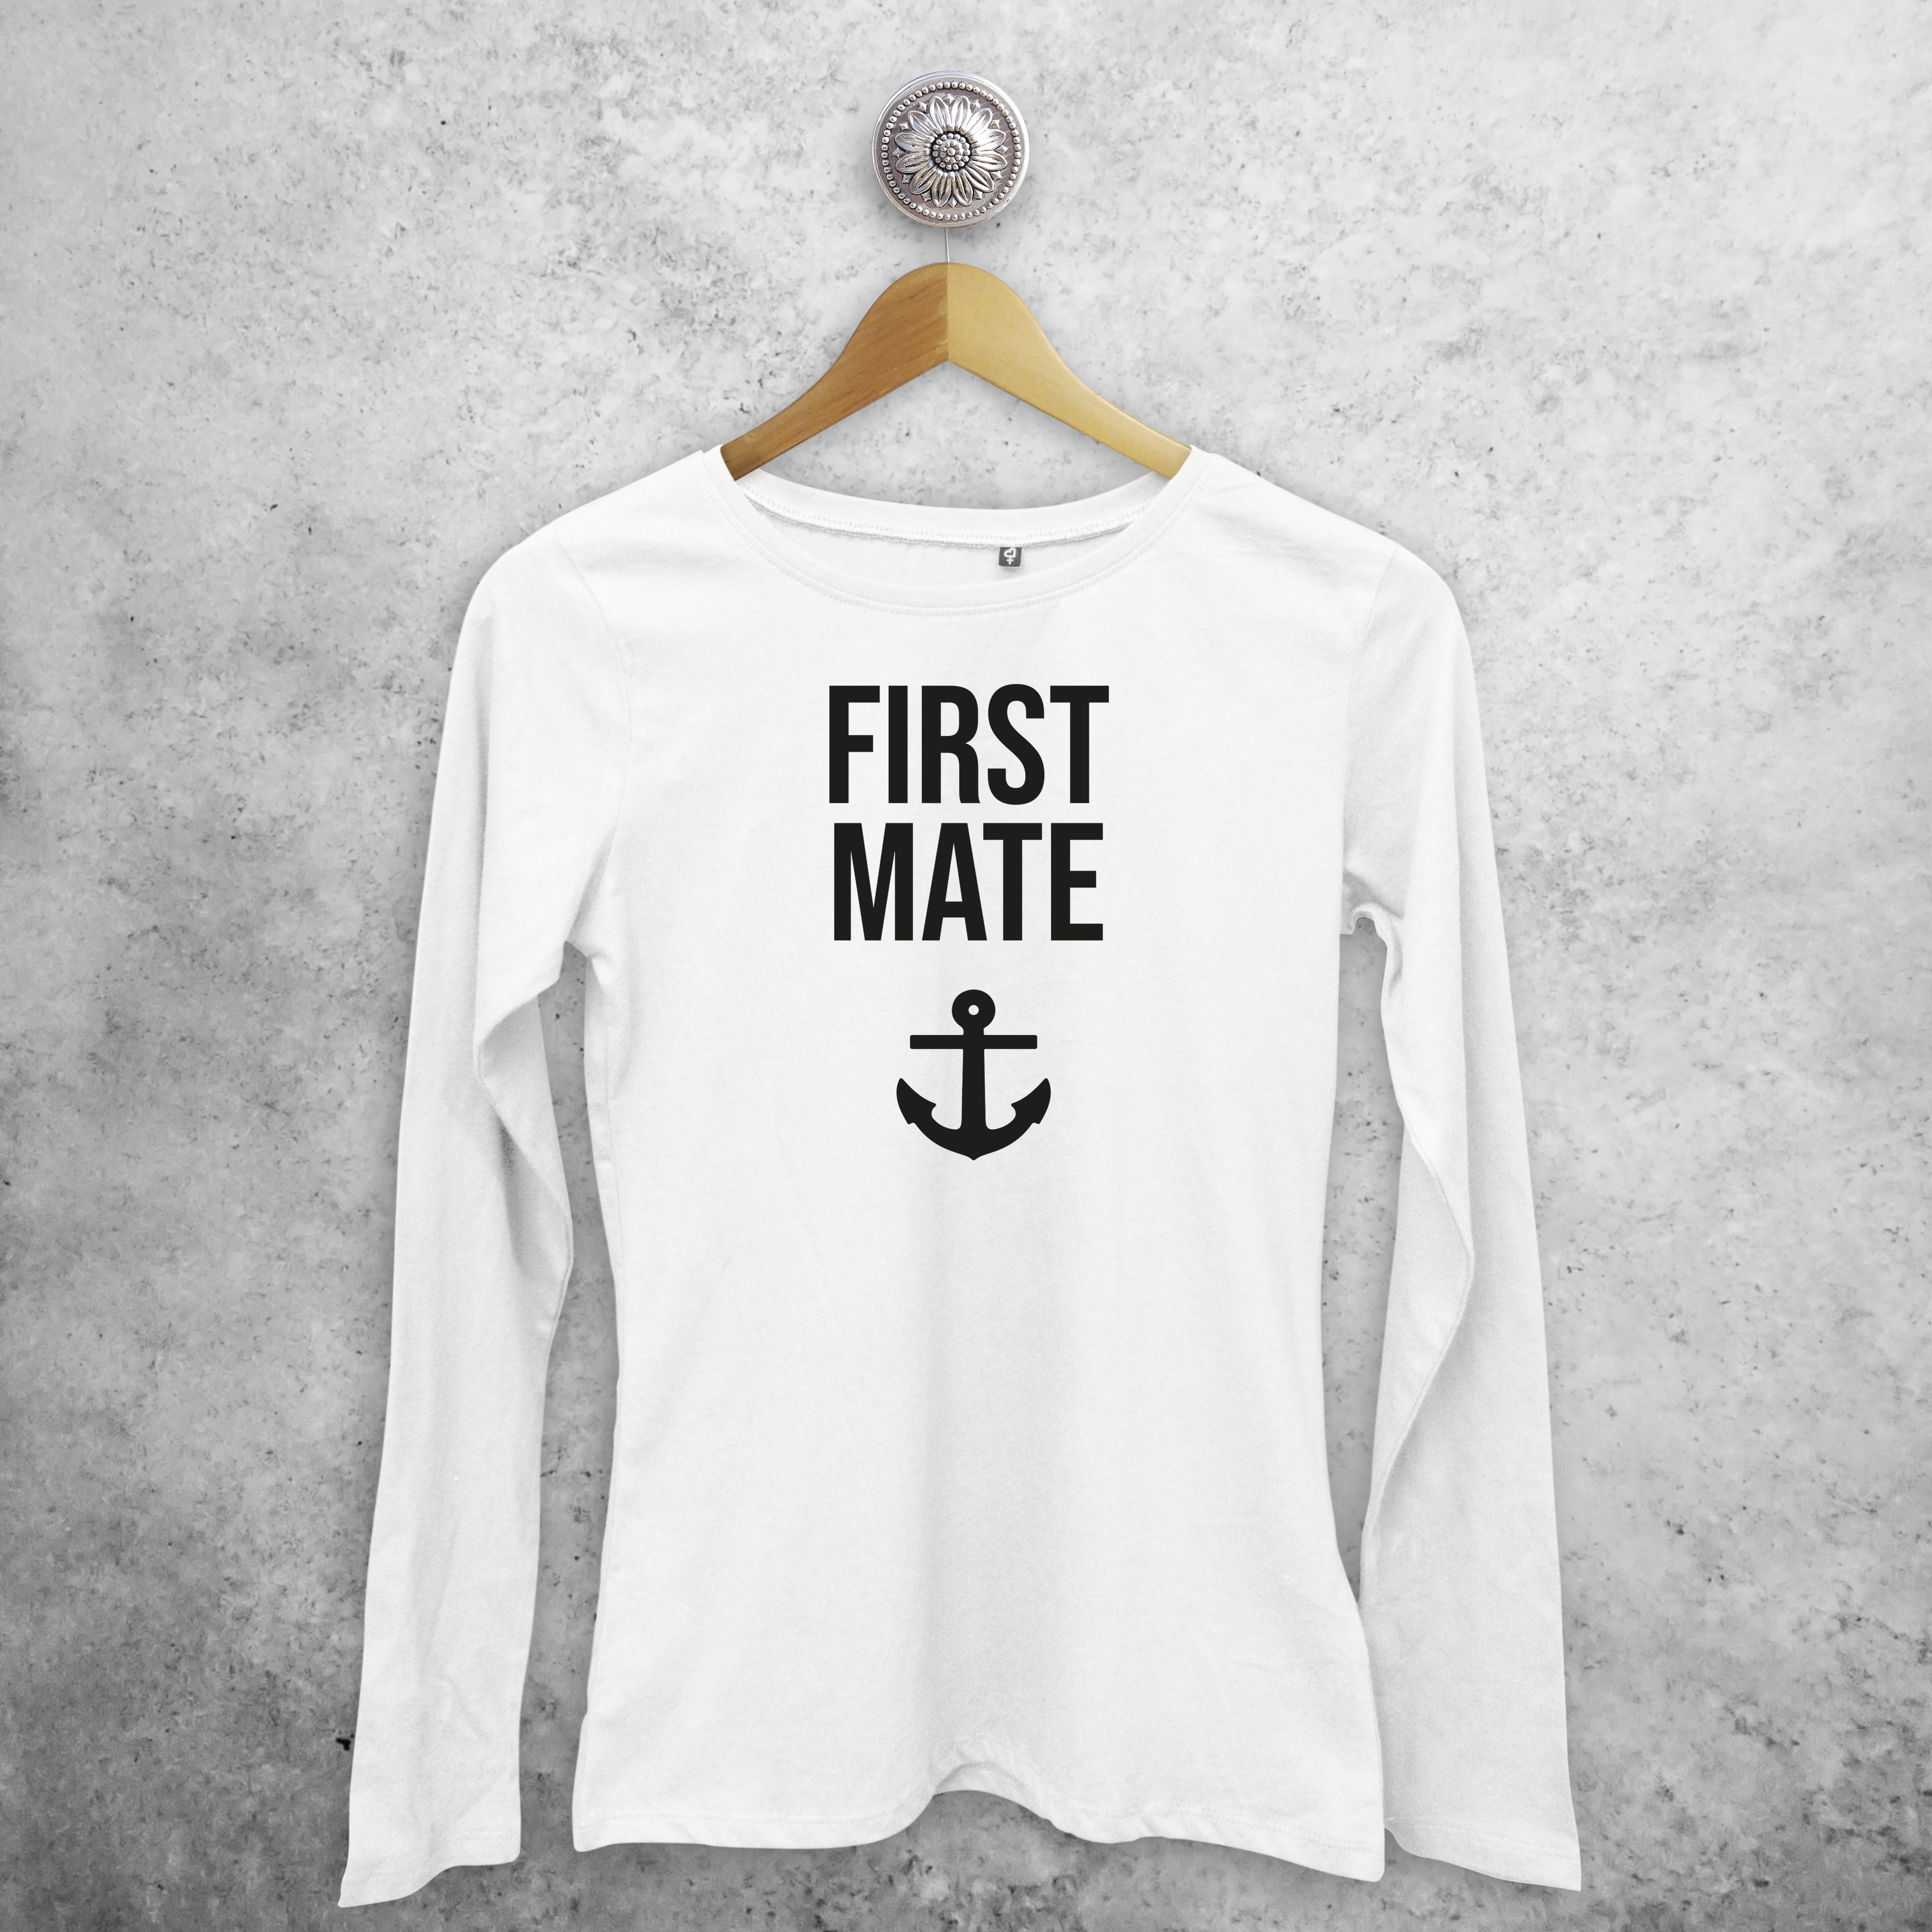 'First mate' adult longsleeve shirt